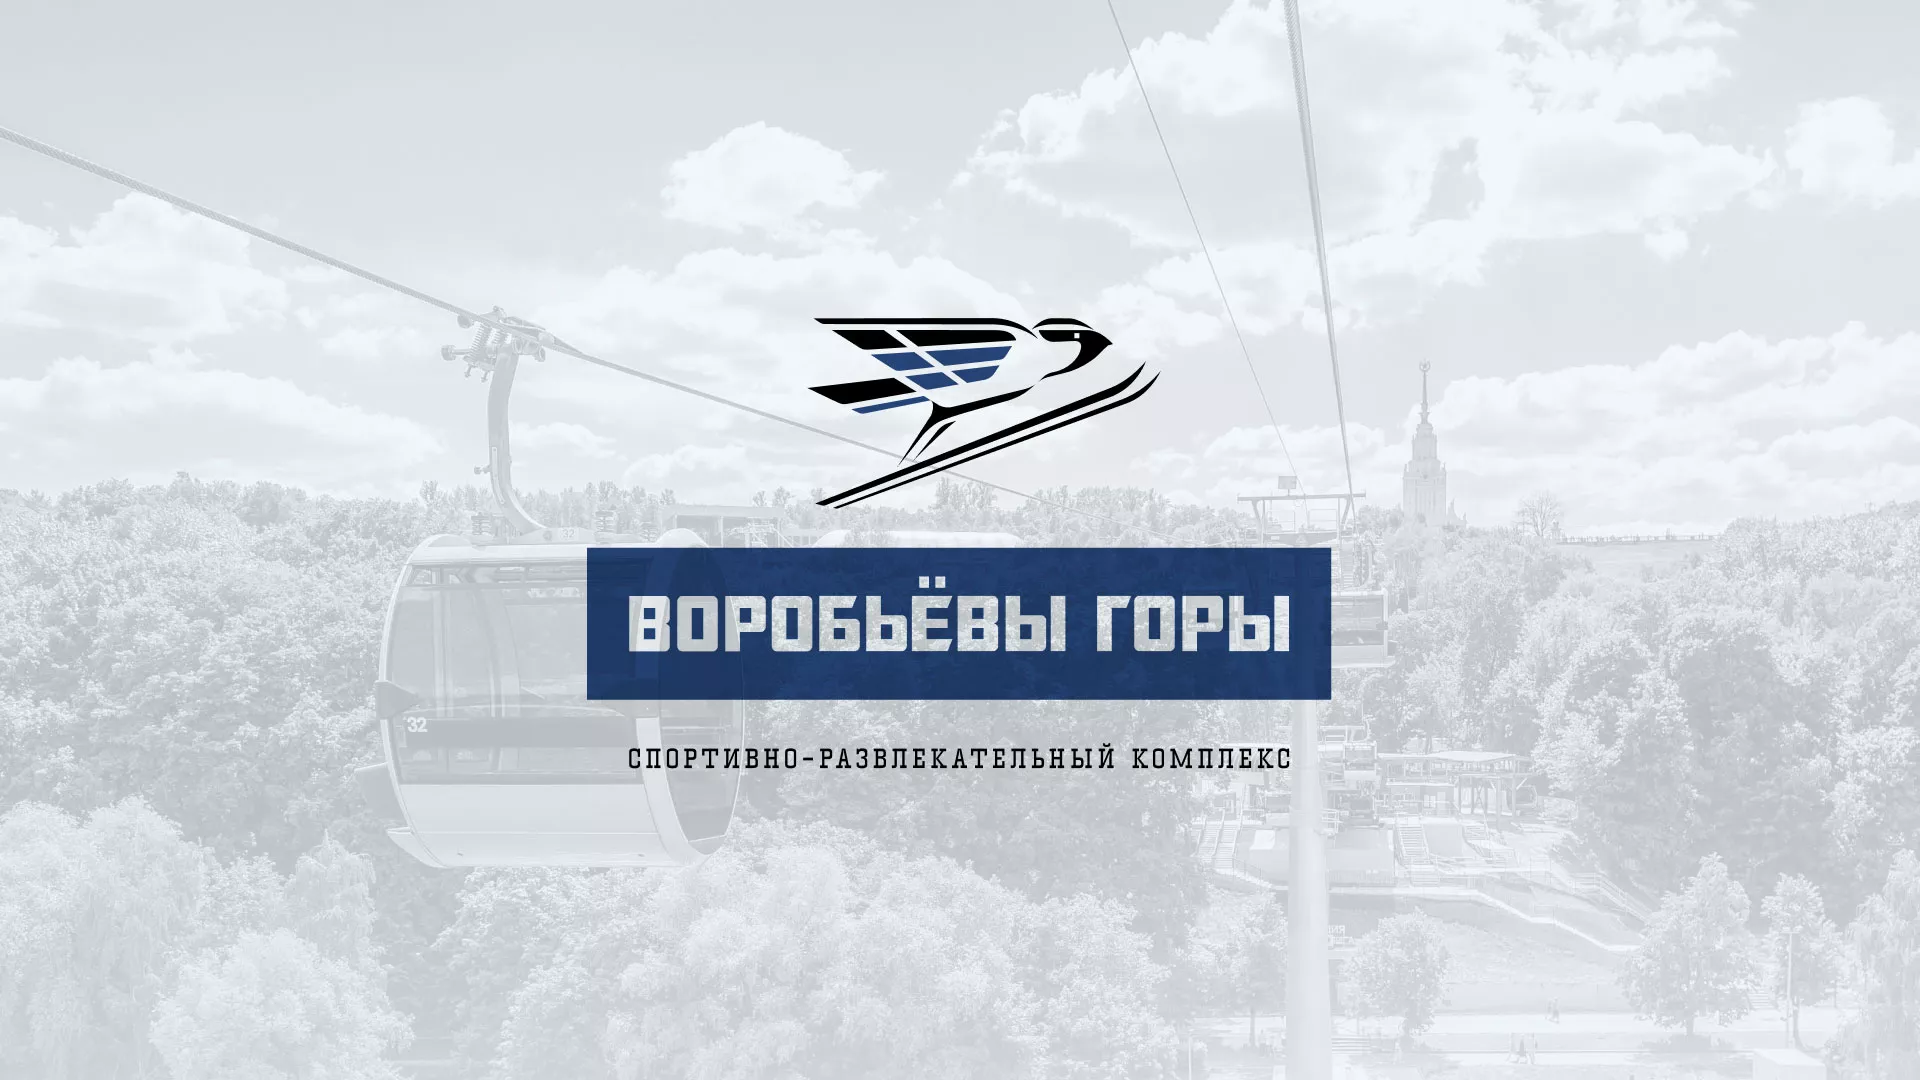 Разработка сайта в Курске для спортивно-развлекательного комплекса «Воробьёвы горы»